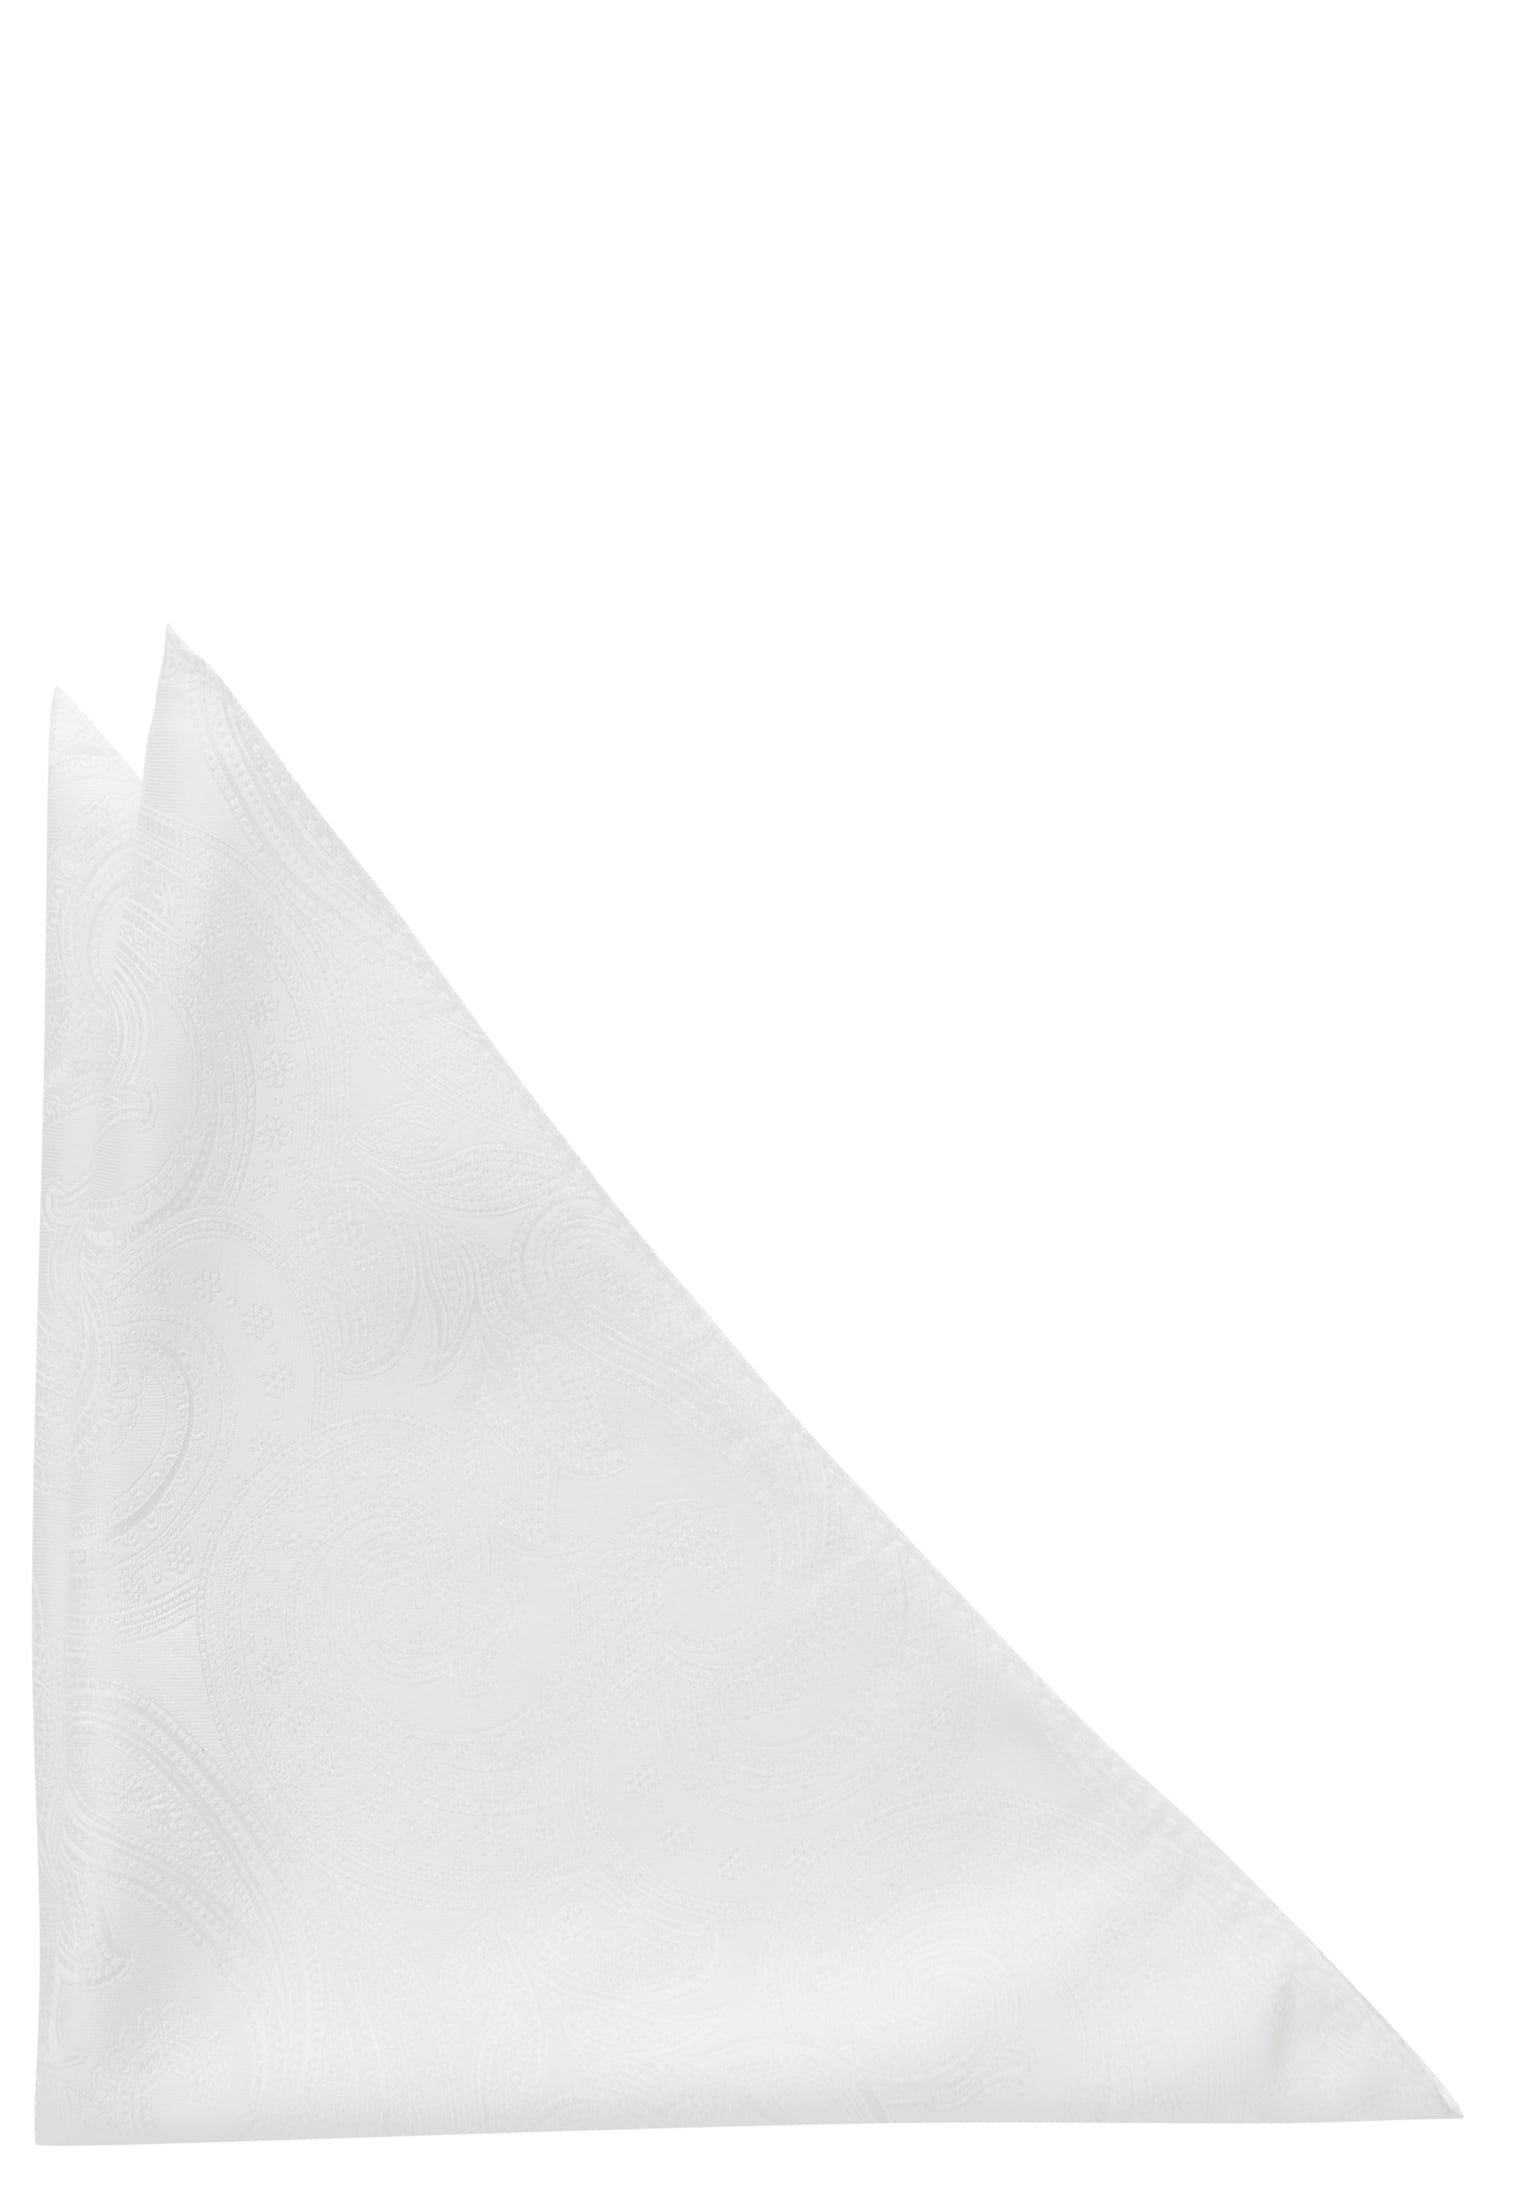 Einstecktuch in off-white gemustert | off-white | OS | 1AC01873-00-02-OS | Einstecktücher